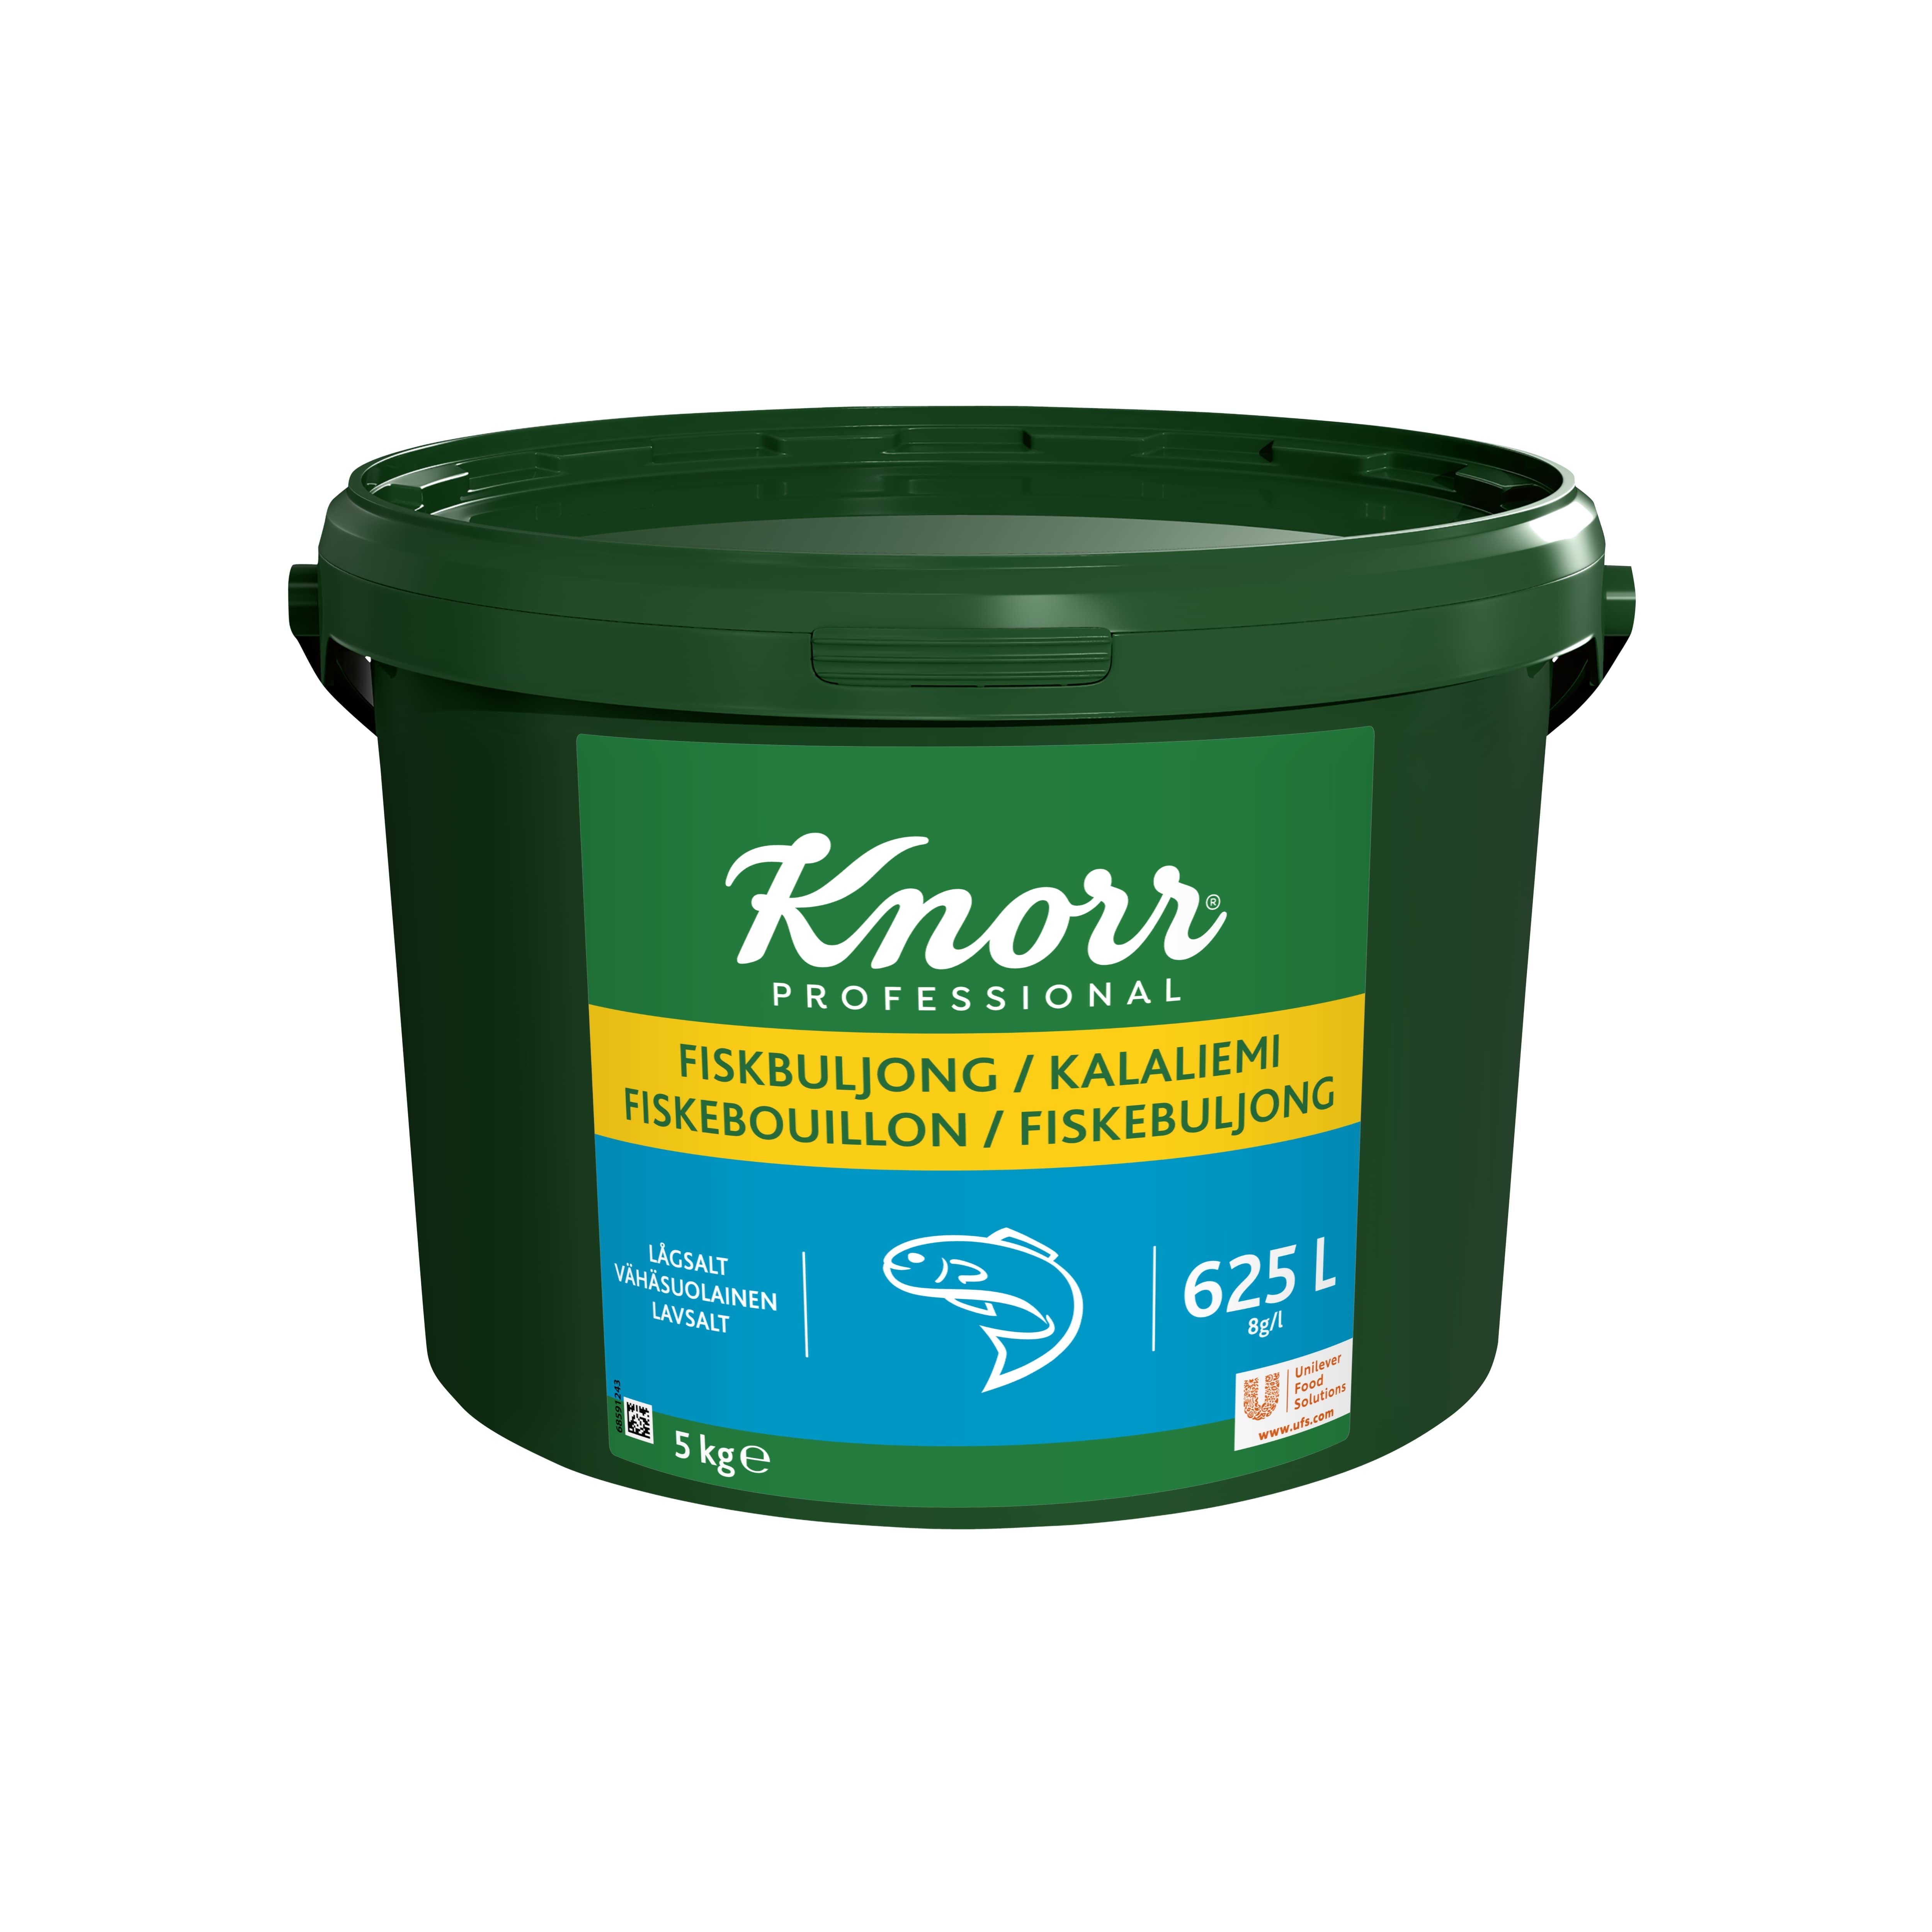 Knorr Kalaliemi vähäsuolainen 5 kg/ 625 L - 